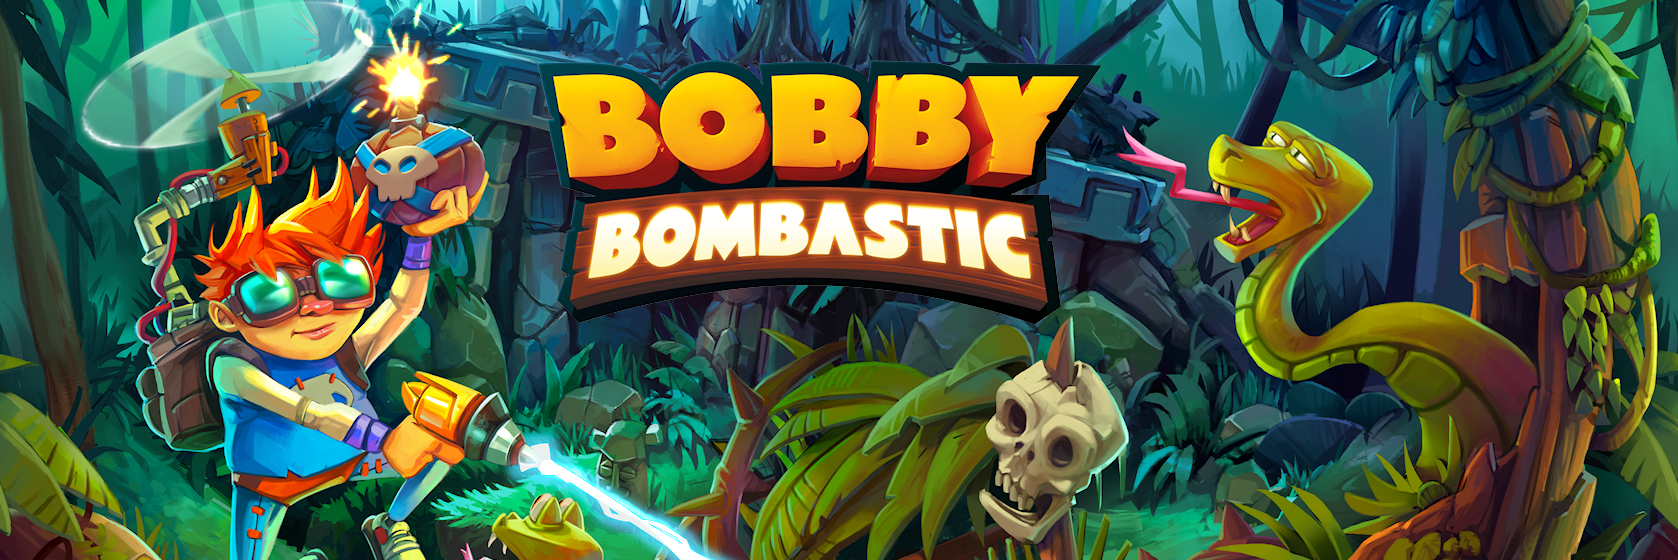 Bobby Bombastic